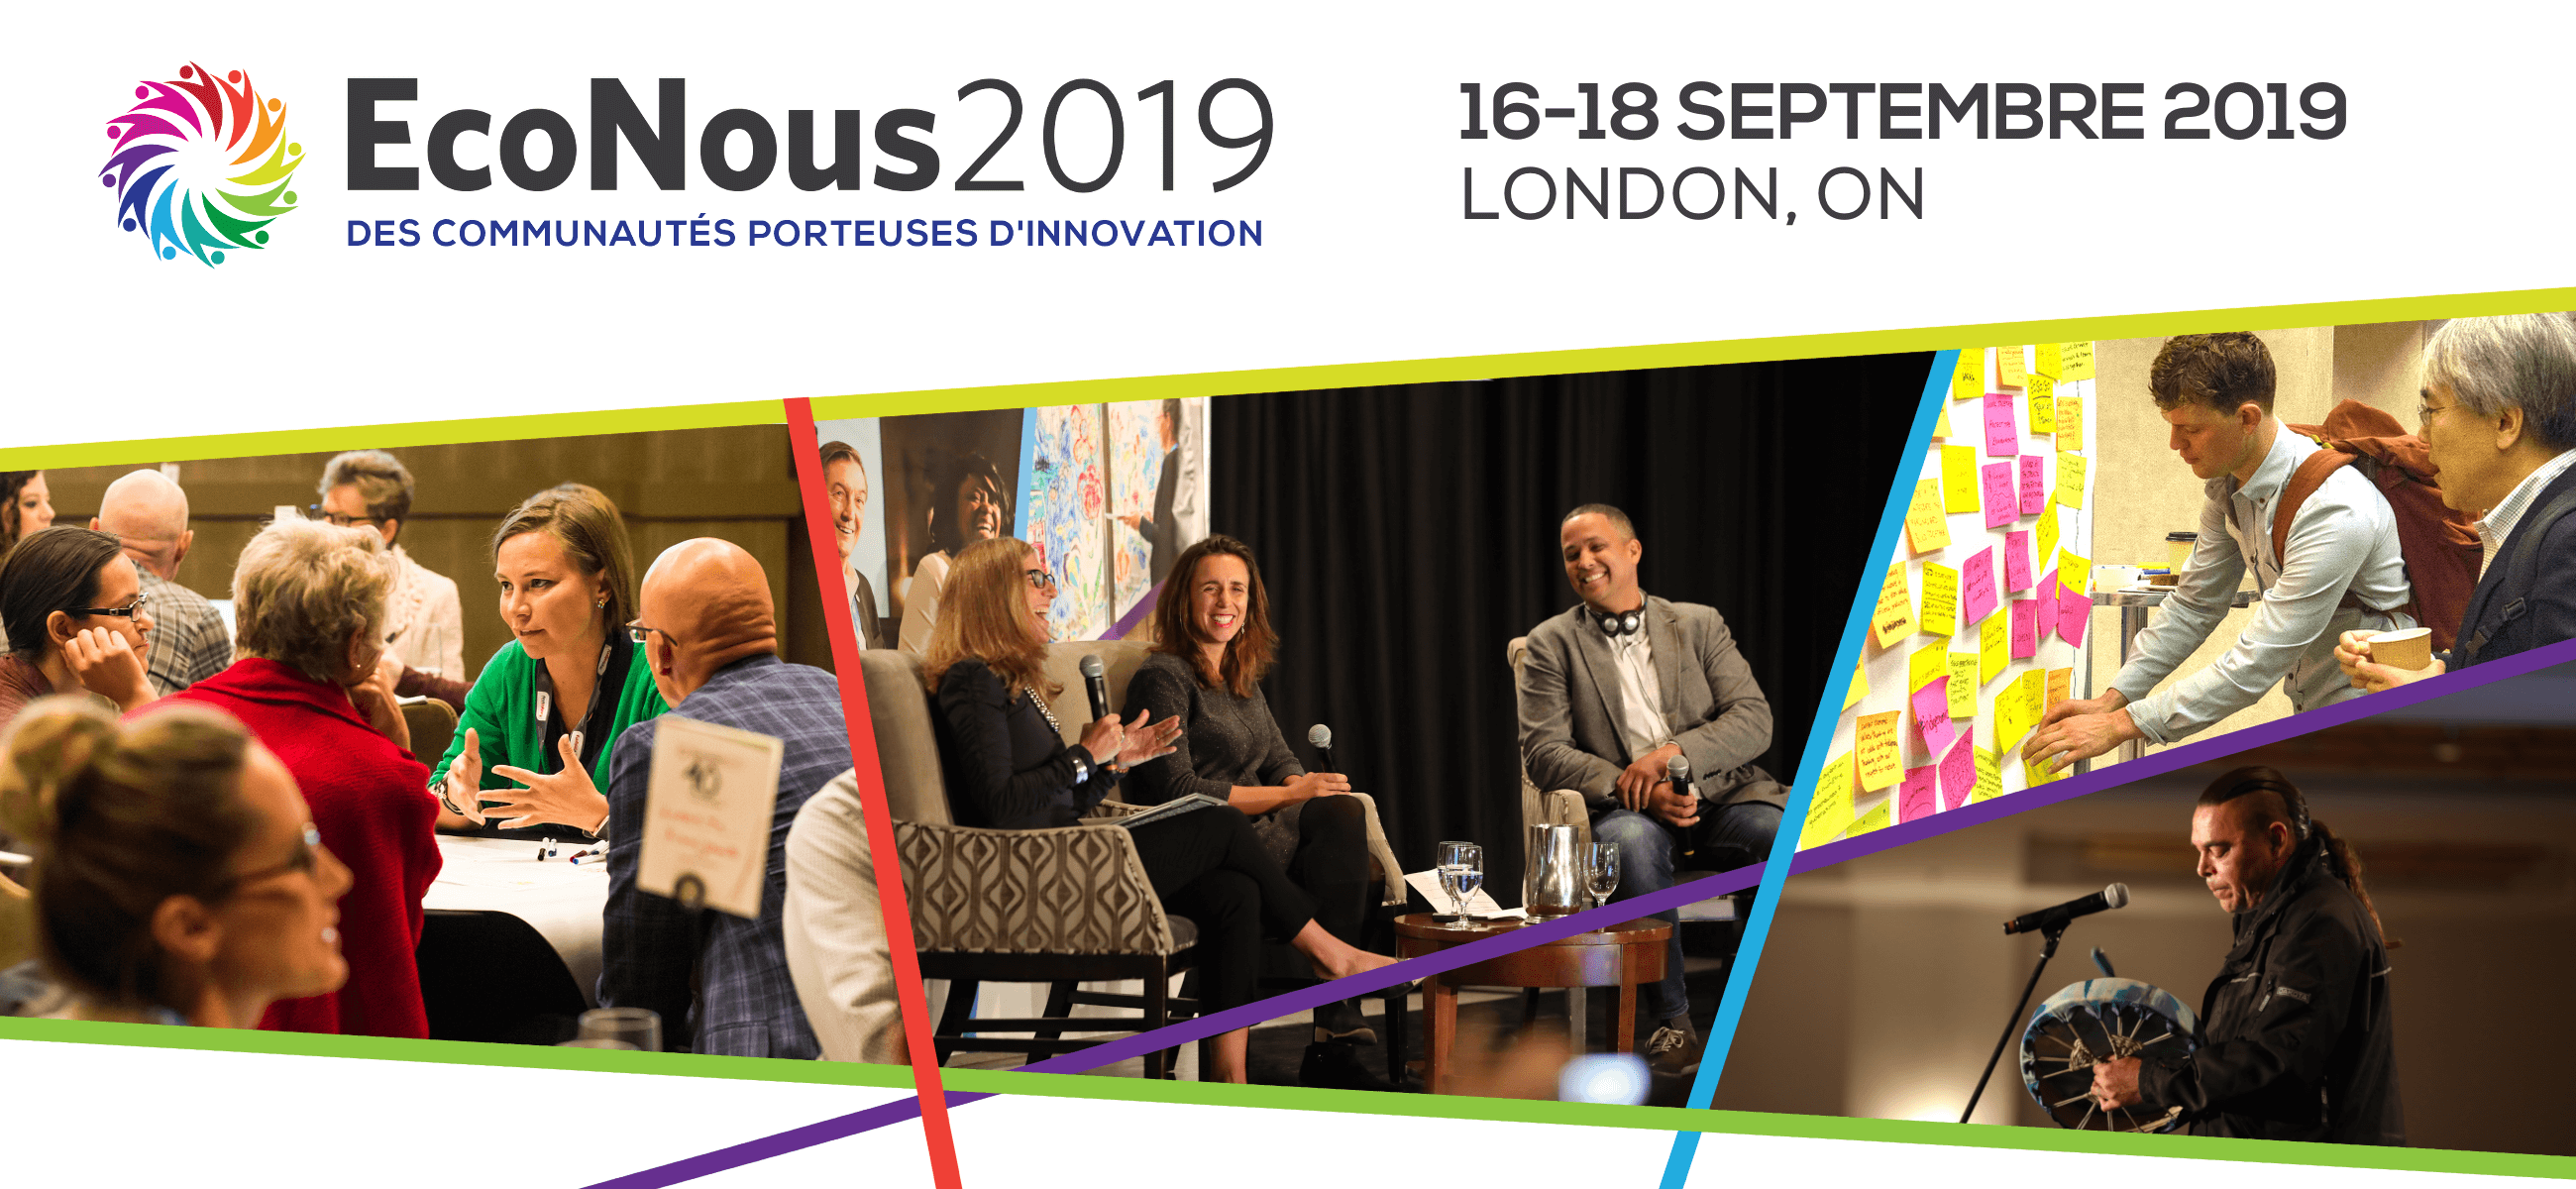 EcoNous2019 : des communautés porteuses d'innovation (16-18 septembre, London, ON)